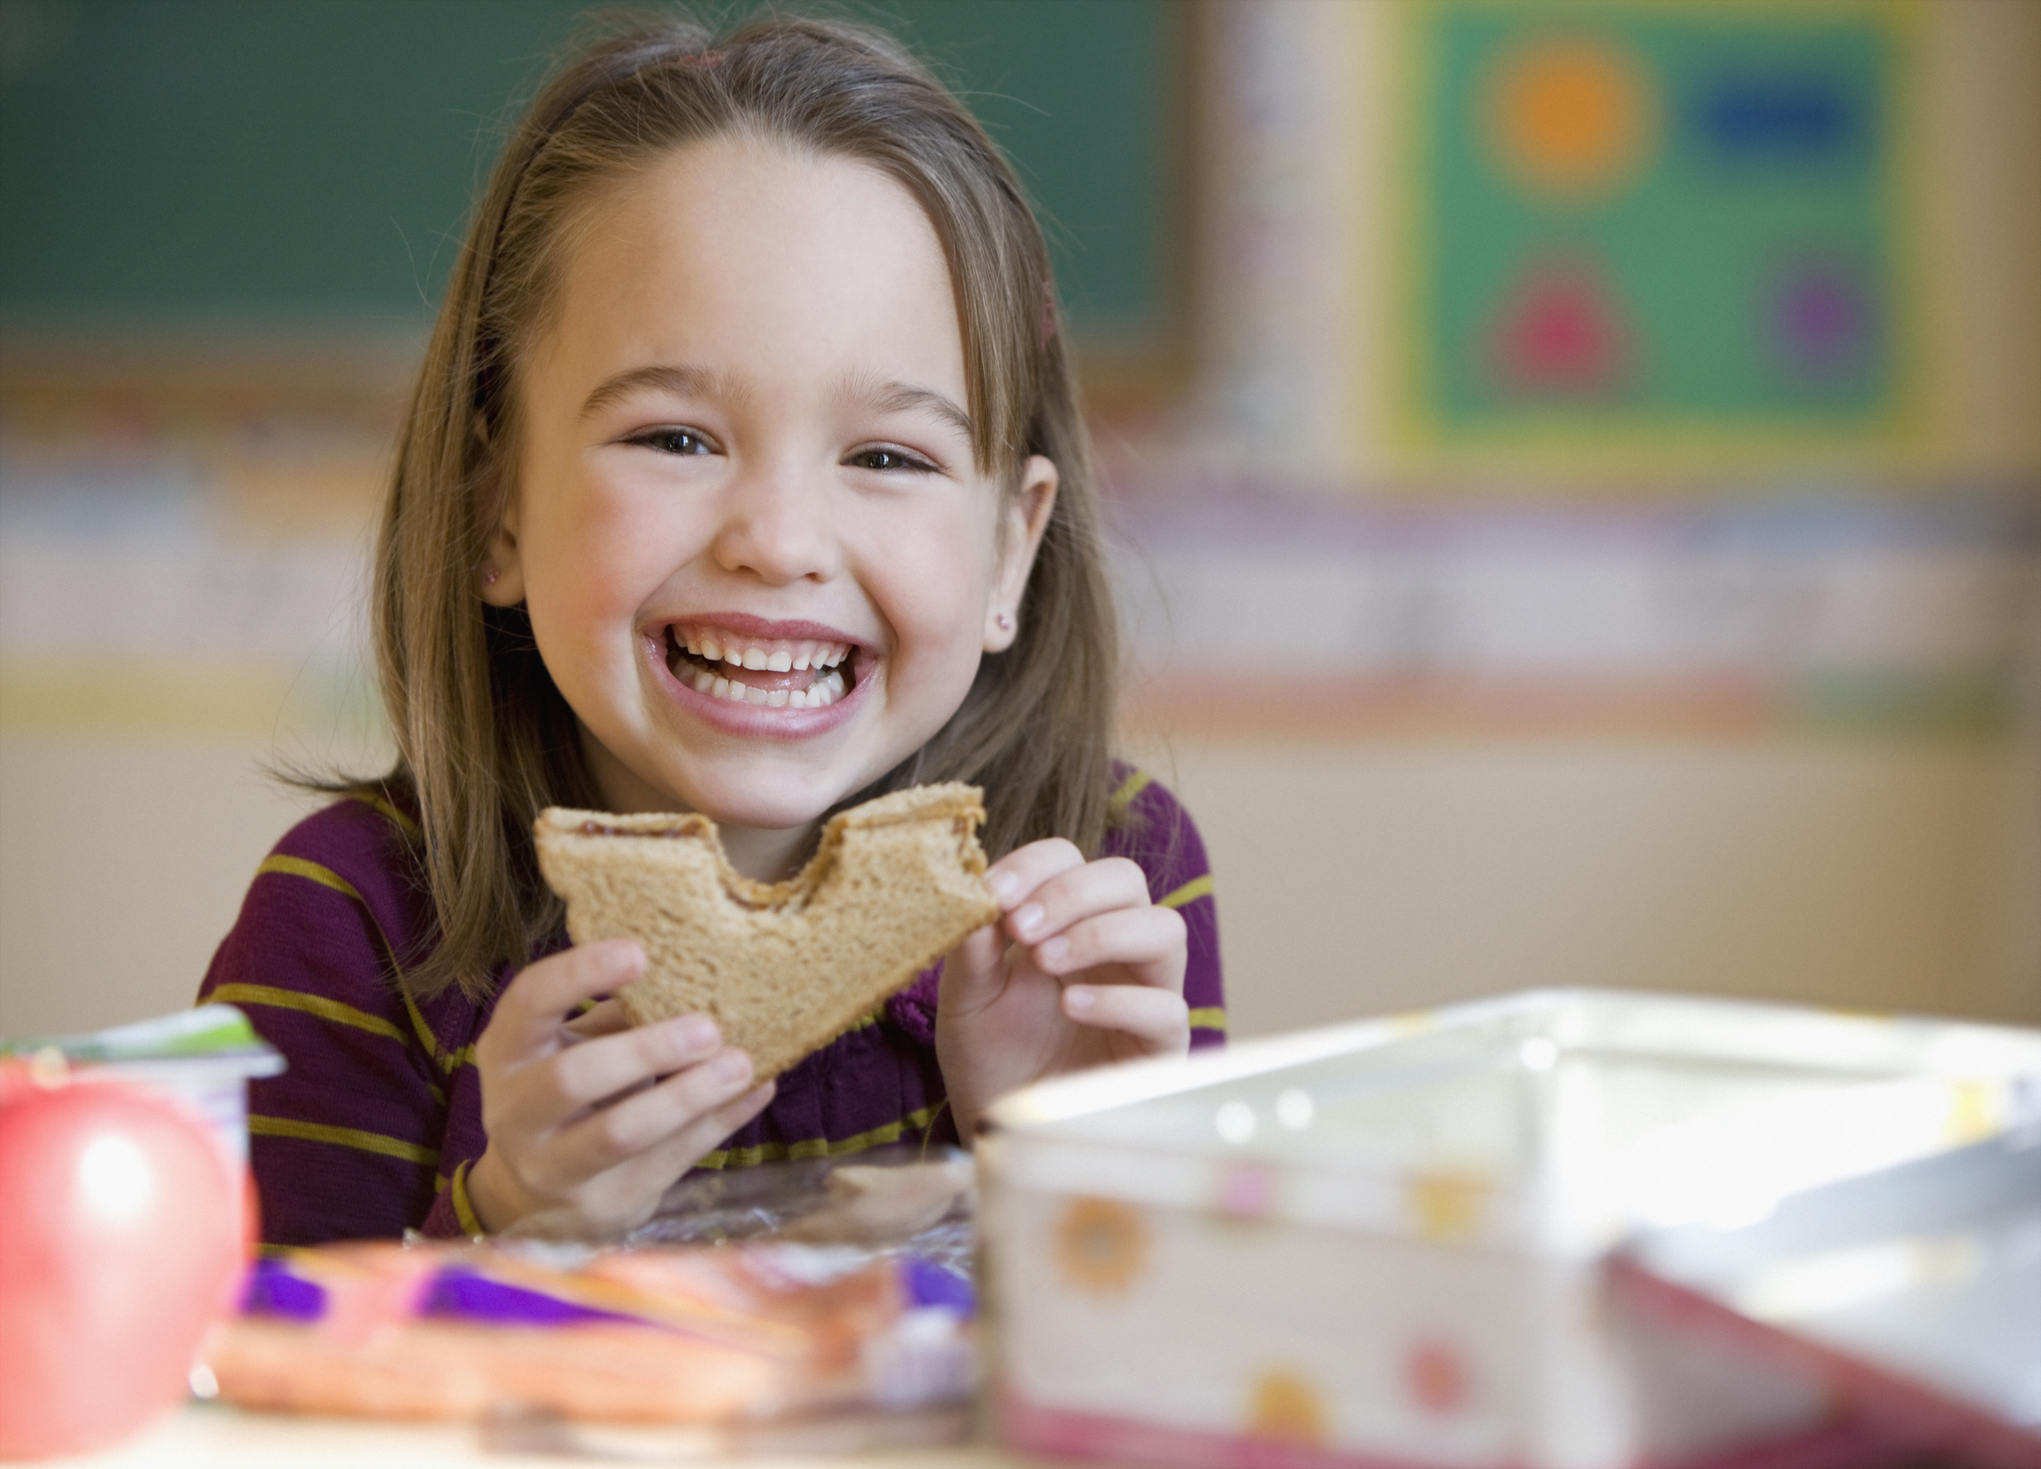 Los sándwiches son ideales para los más chicos. Para que sean saludables se deben realizar con pan integral, según los expertos / (Getty Images)